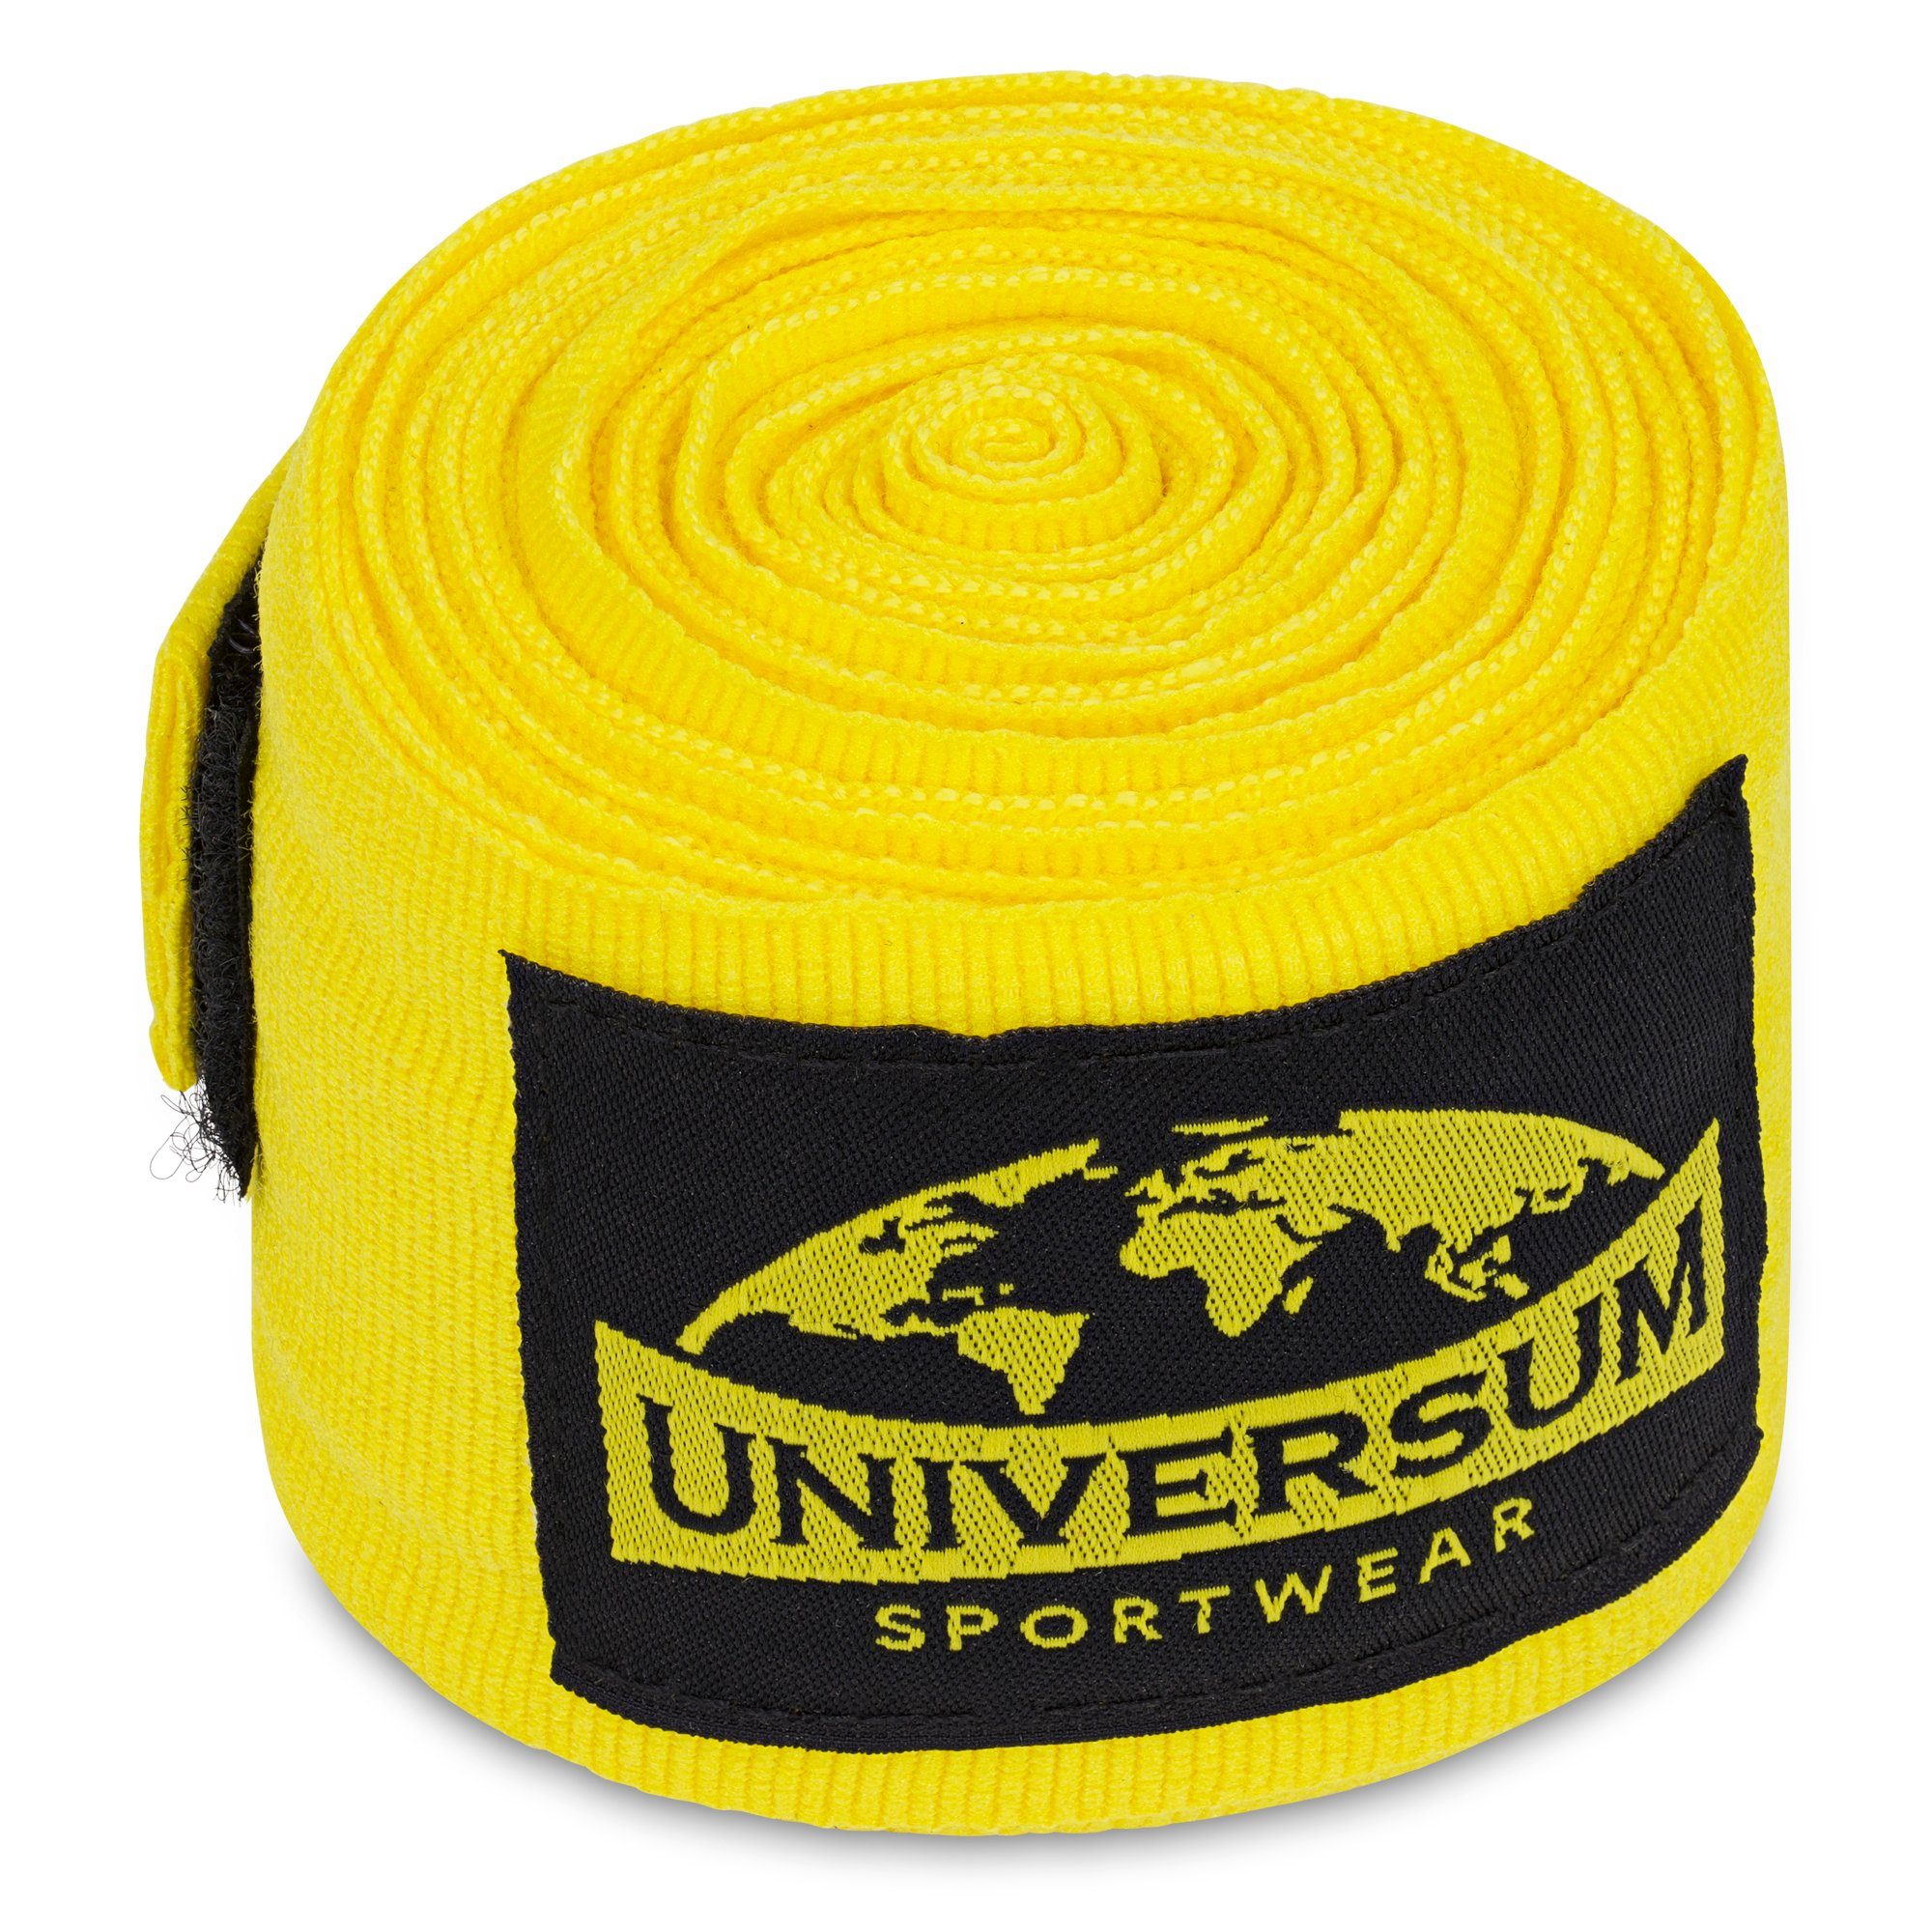 Gelb-Schwarz Sportwear Bandage, Handgelenk mit Boxbandagen Universum Klettverschluss langen